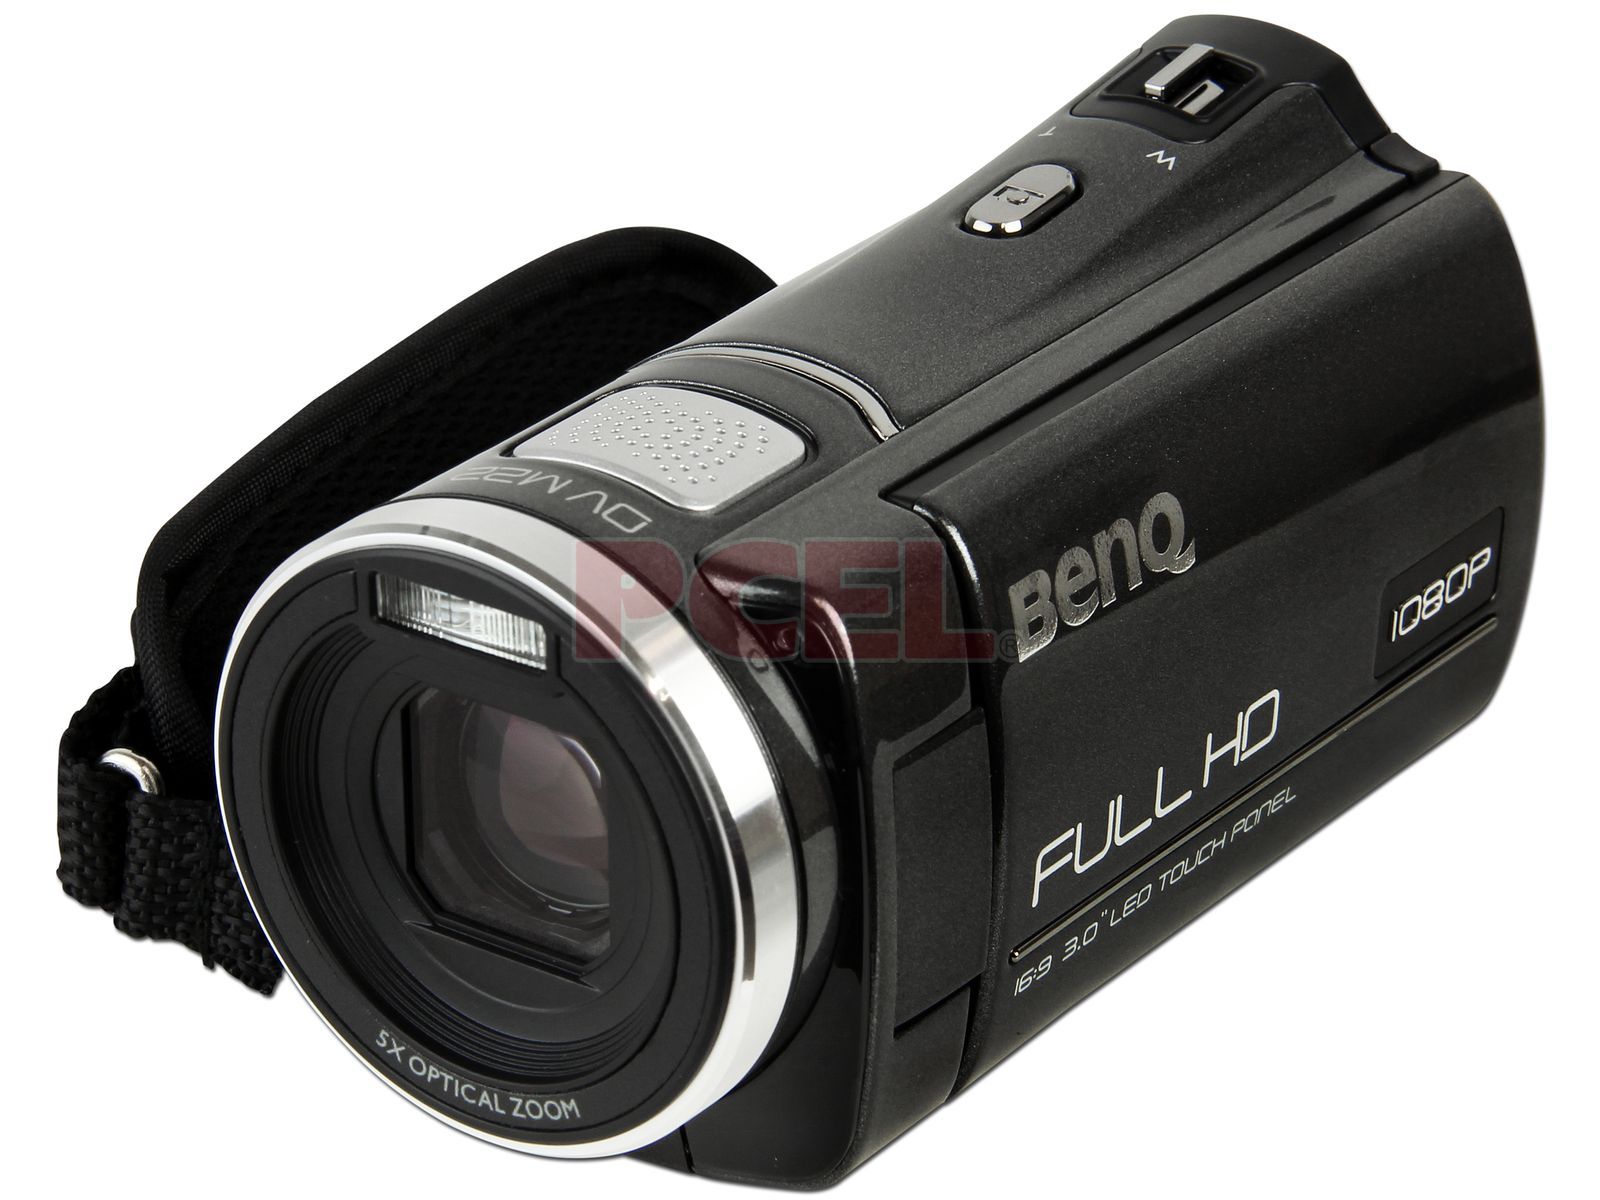 Cámara Video 1080P Full HD BenQ DV M22, Pantalla Touch de 3", Zoom Óptico 5x, graba Memorias SDHC. Color Gris.